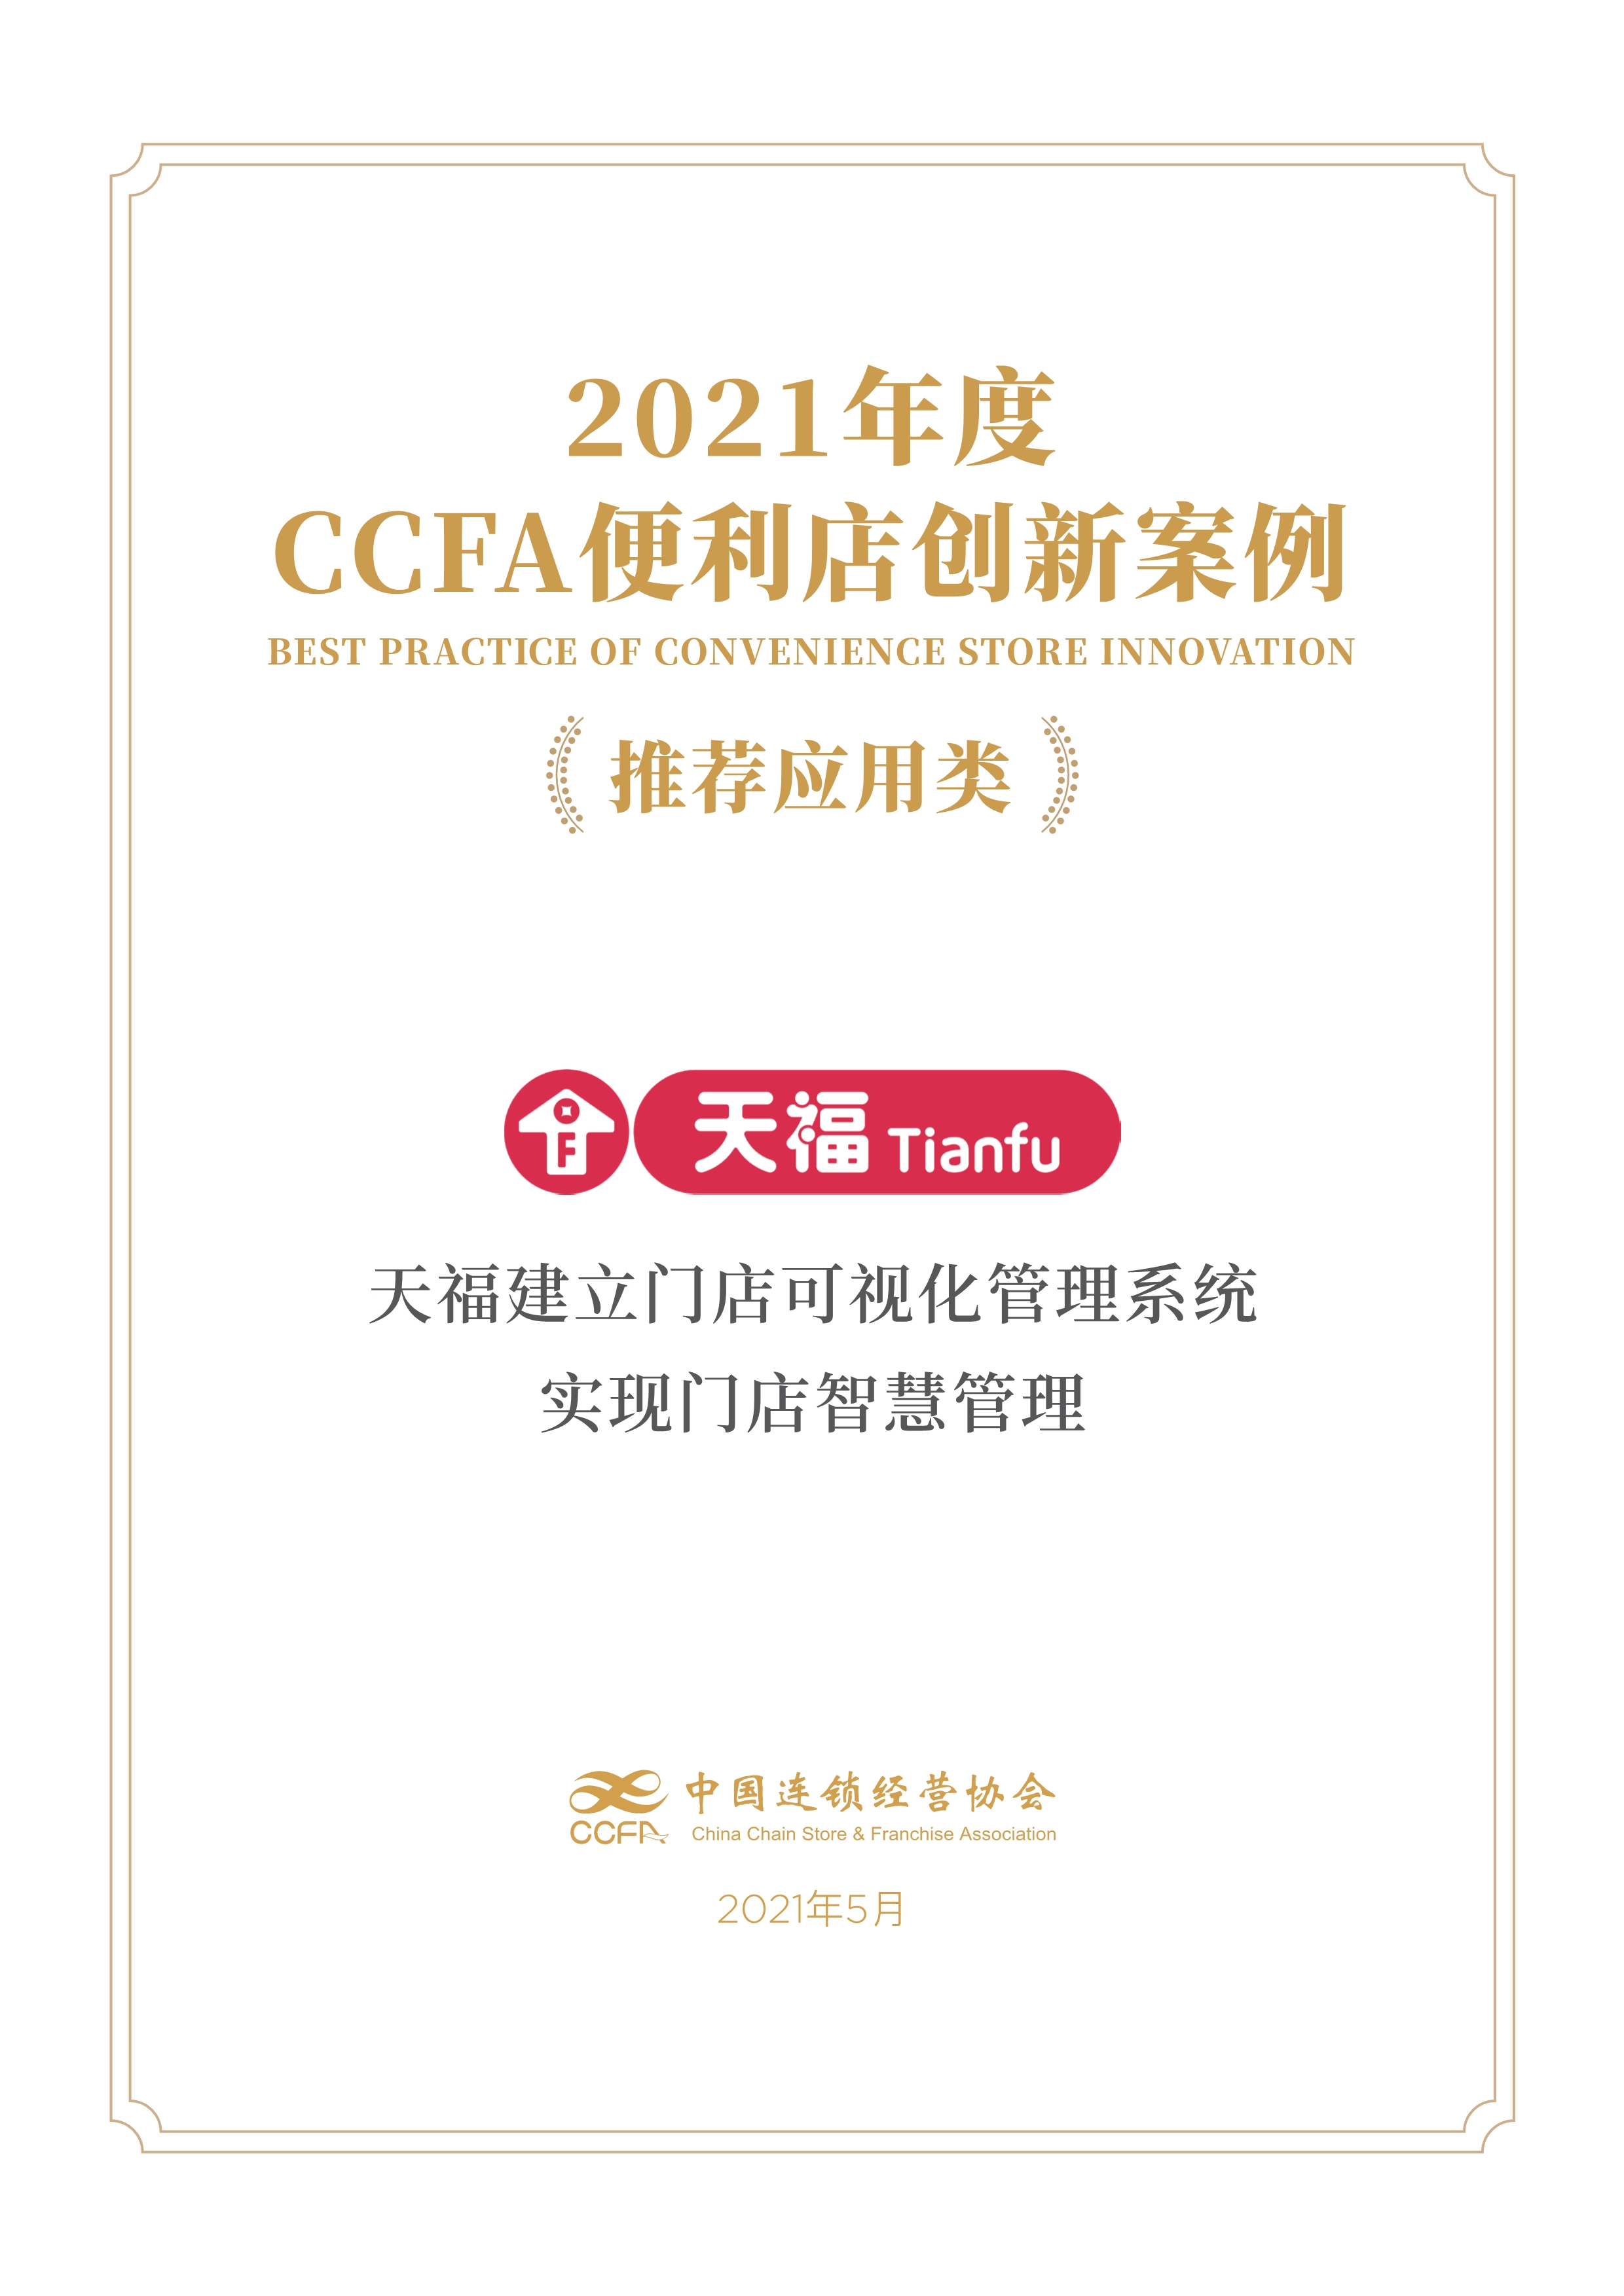 CCFA创新案例奖 | 天福建立门店可视化管理系统，实现门店智慧管理